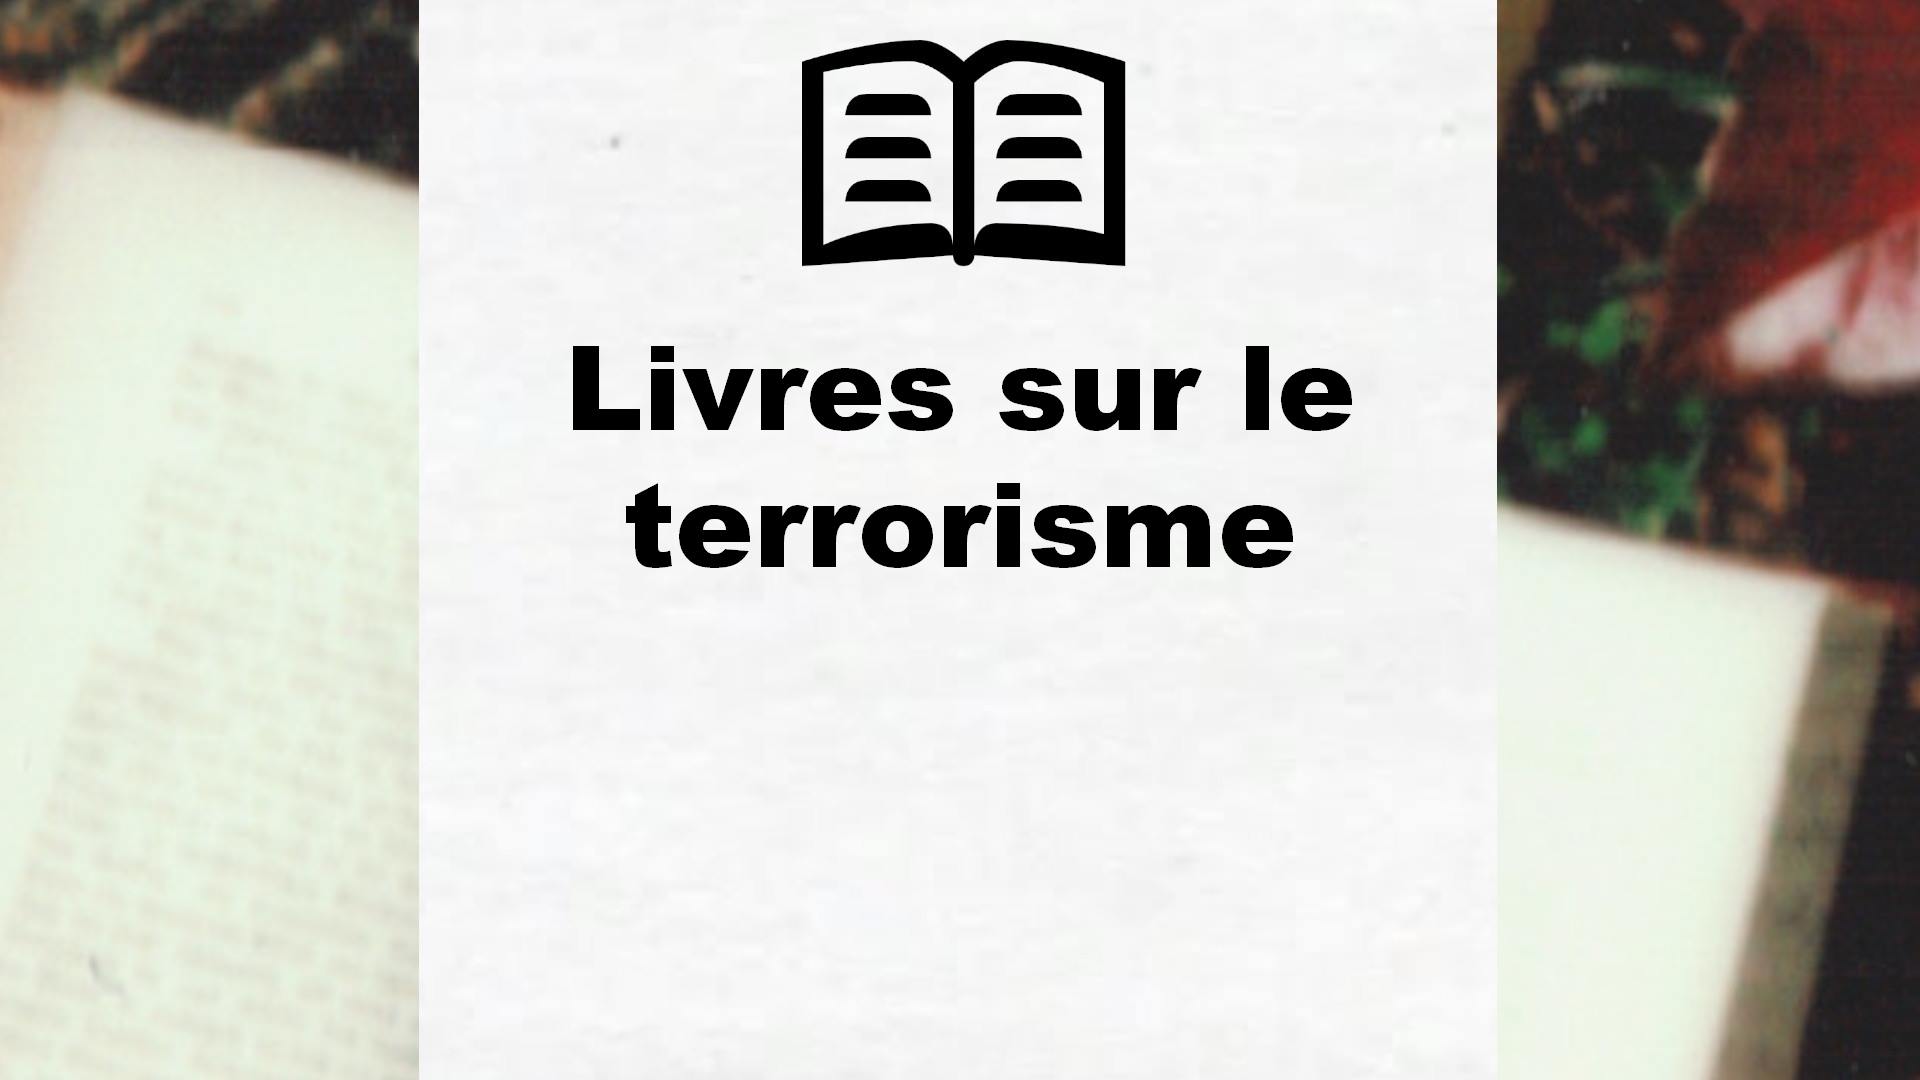 Livres sur le terrorisme